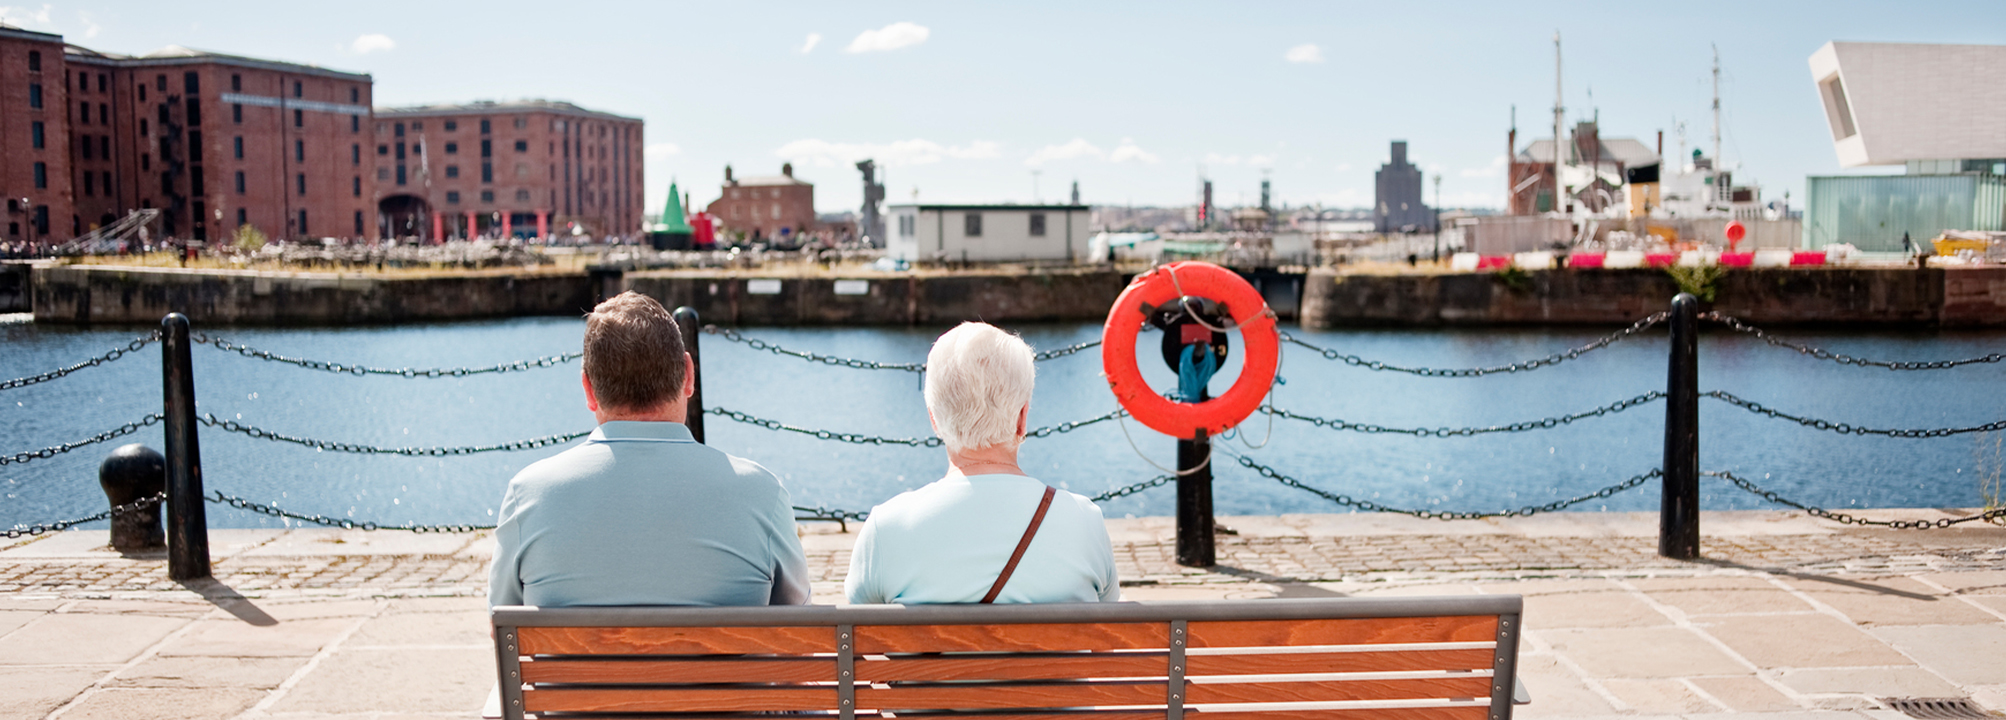 En man och kvinna sitter på en bänk och blickar ut över en hamnbasäng utan båtar